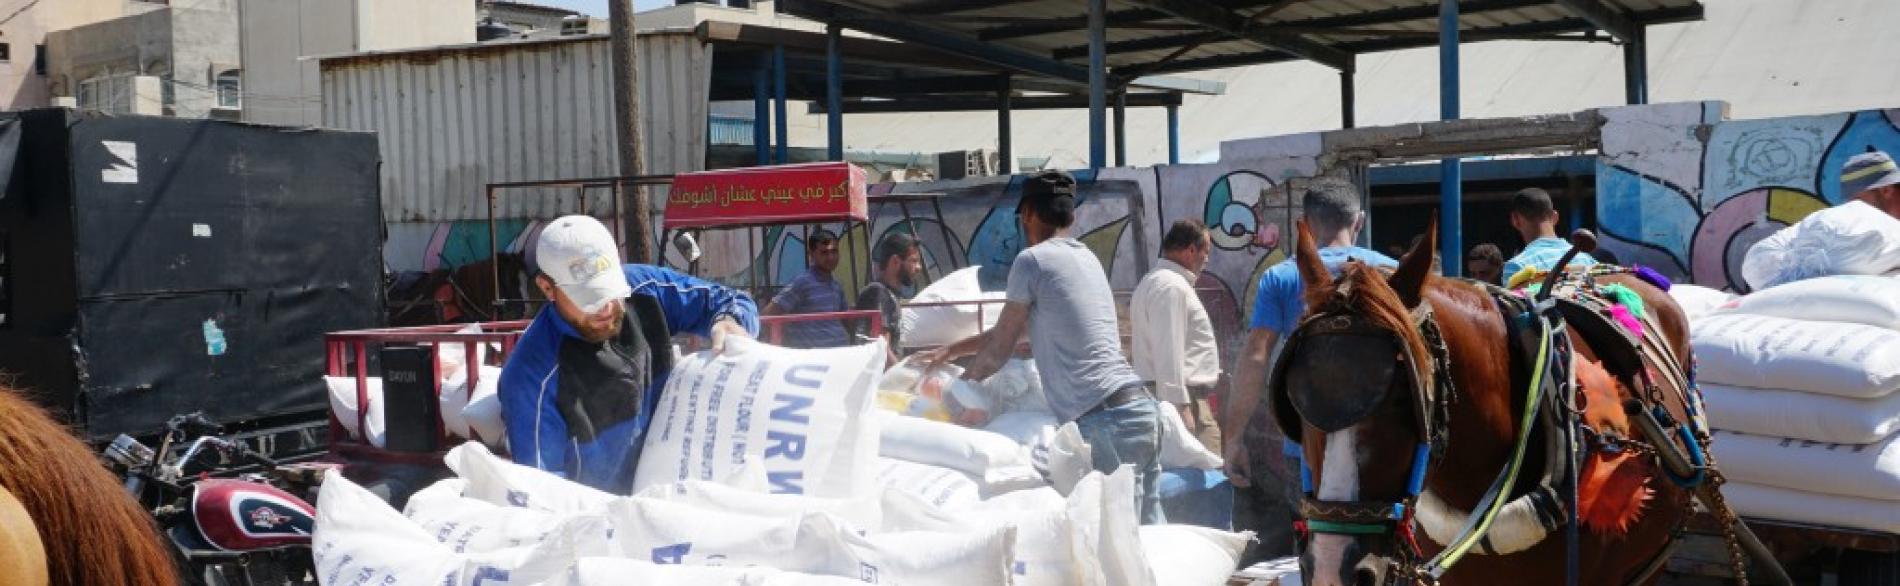 ΟΗΕ: Περισσότερα από 30 φορτηγά με ανθρωπιστική βοήθεια εισήλθαν στη Λωρίδα της Γάζας